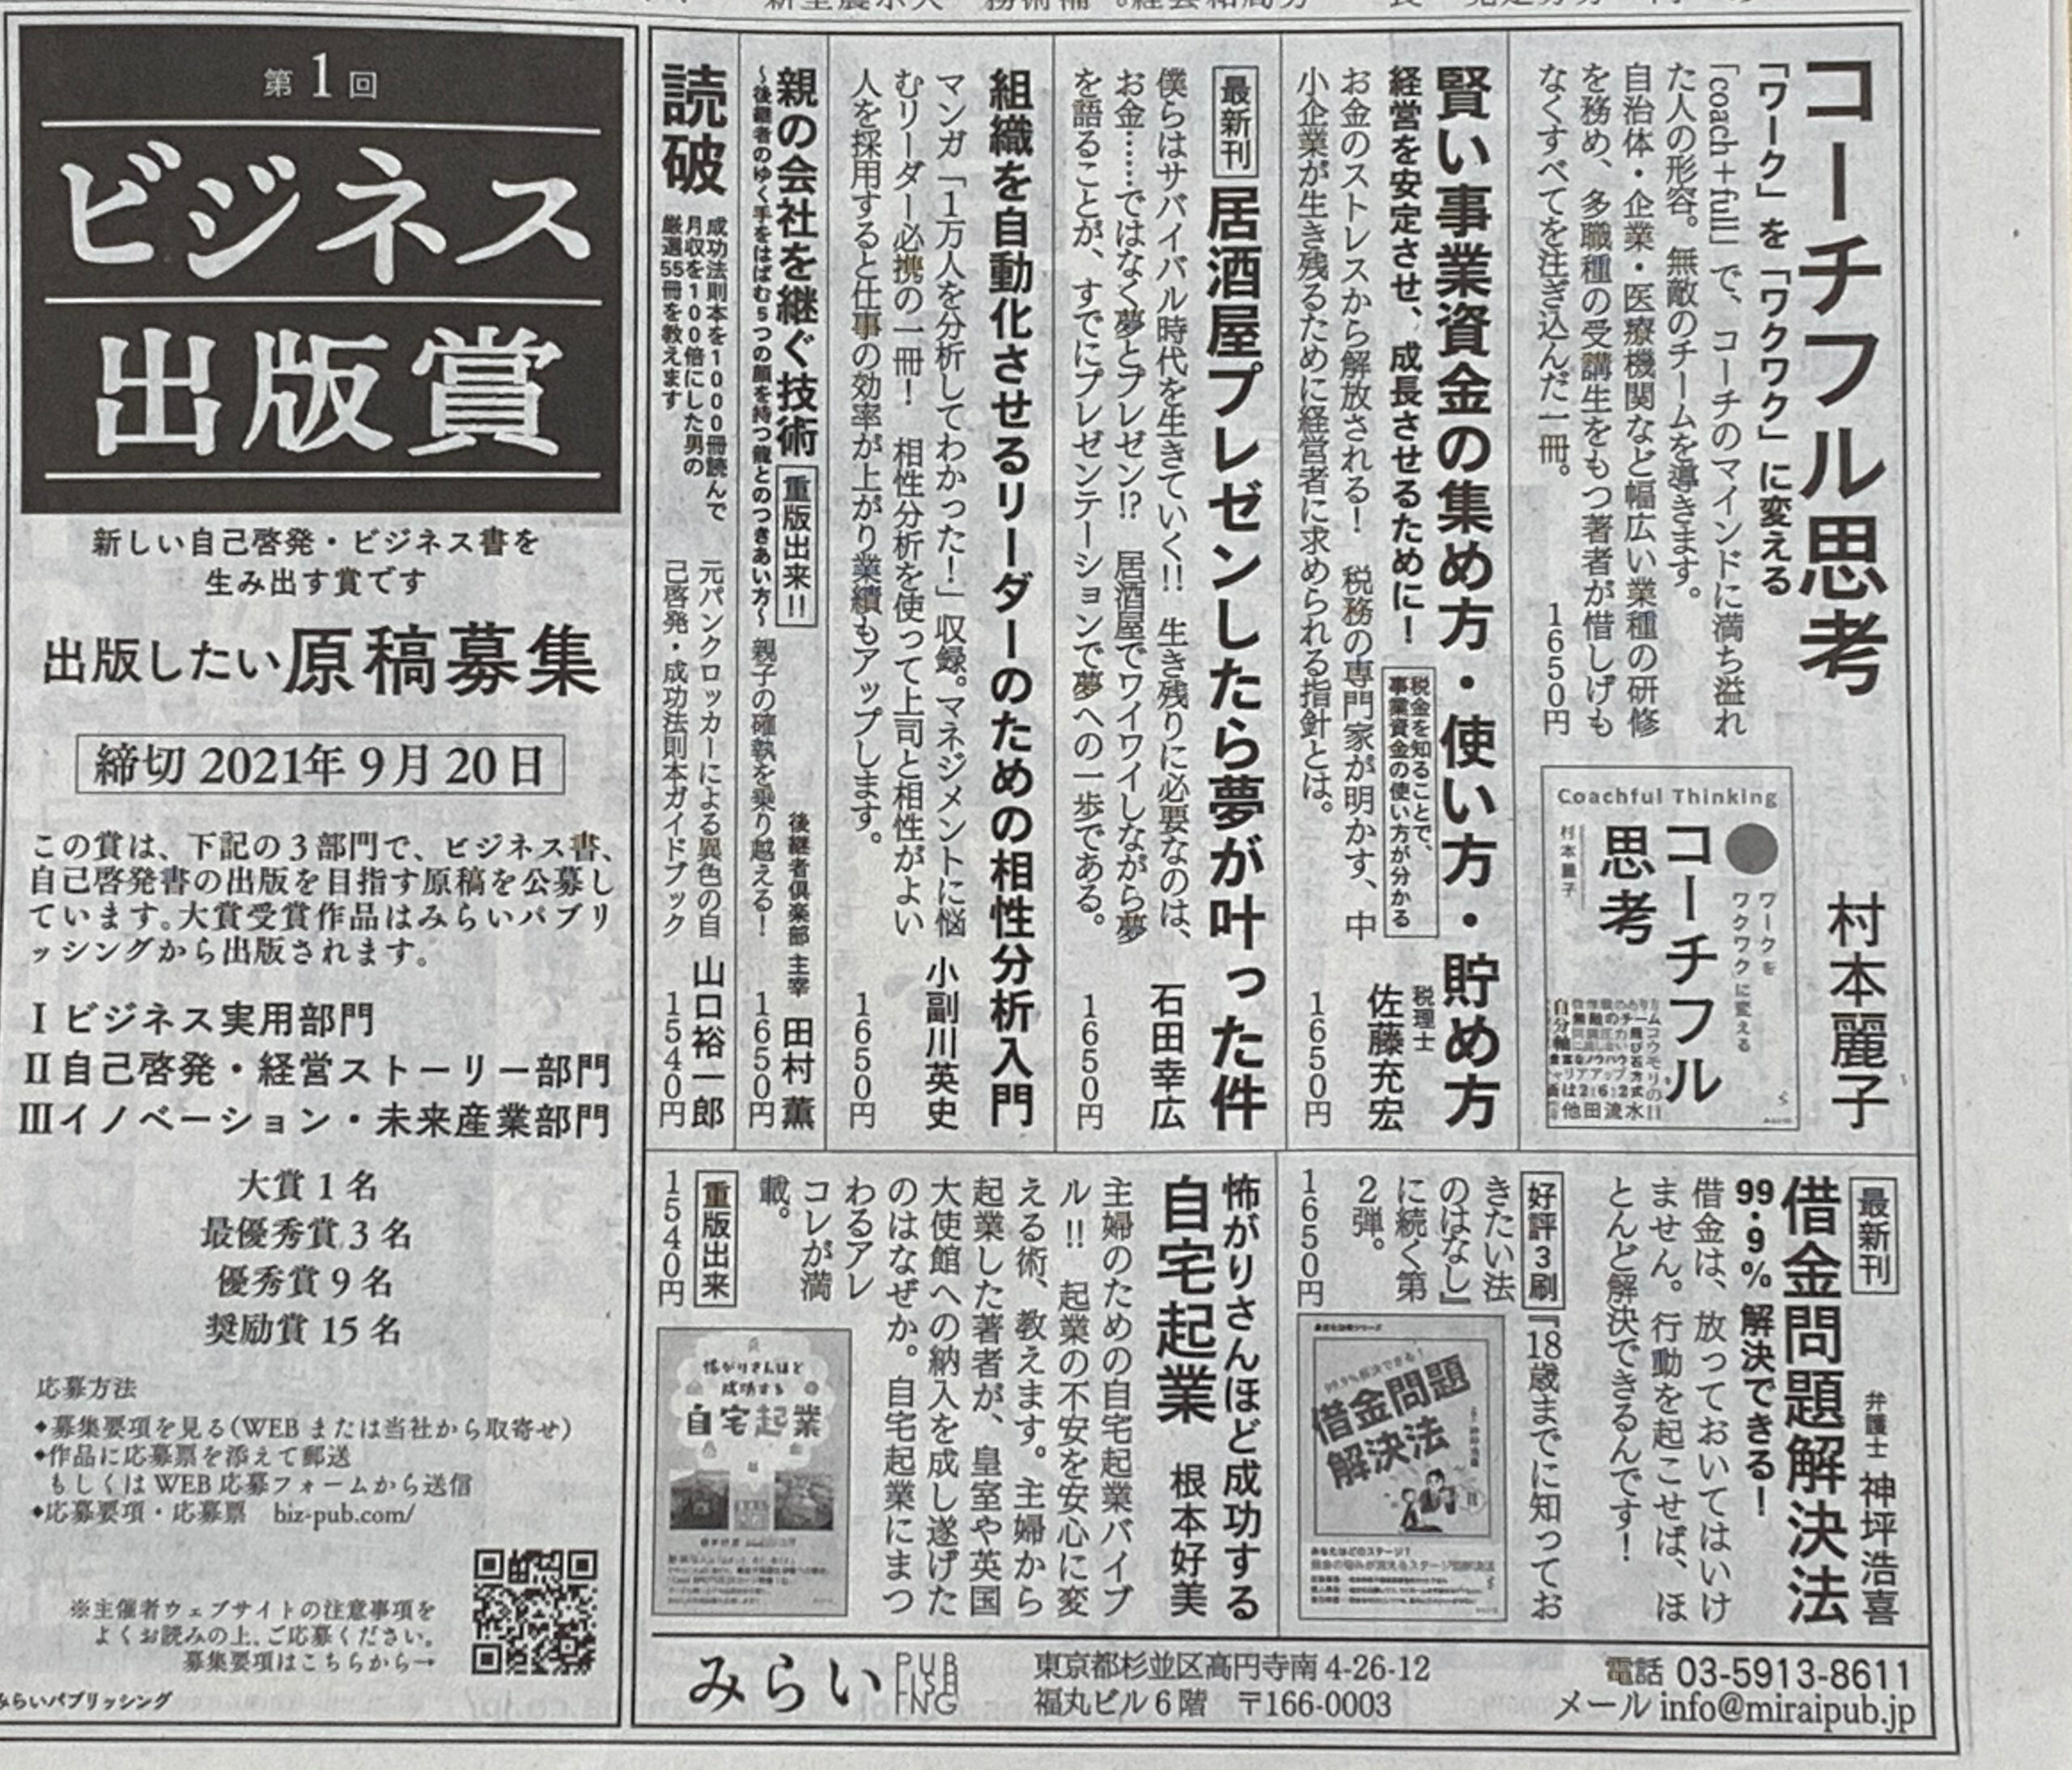 本日付け日本経済新聞朝刊の㈱みらいパブリッシング様のビジネス出版賞案内で、拙著「賢い事業資金の集め方・使い方・貯め方」が紹介されました。